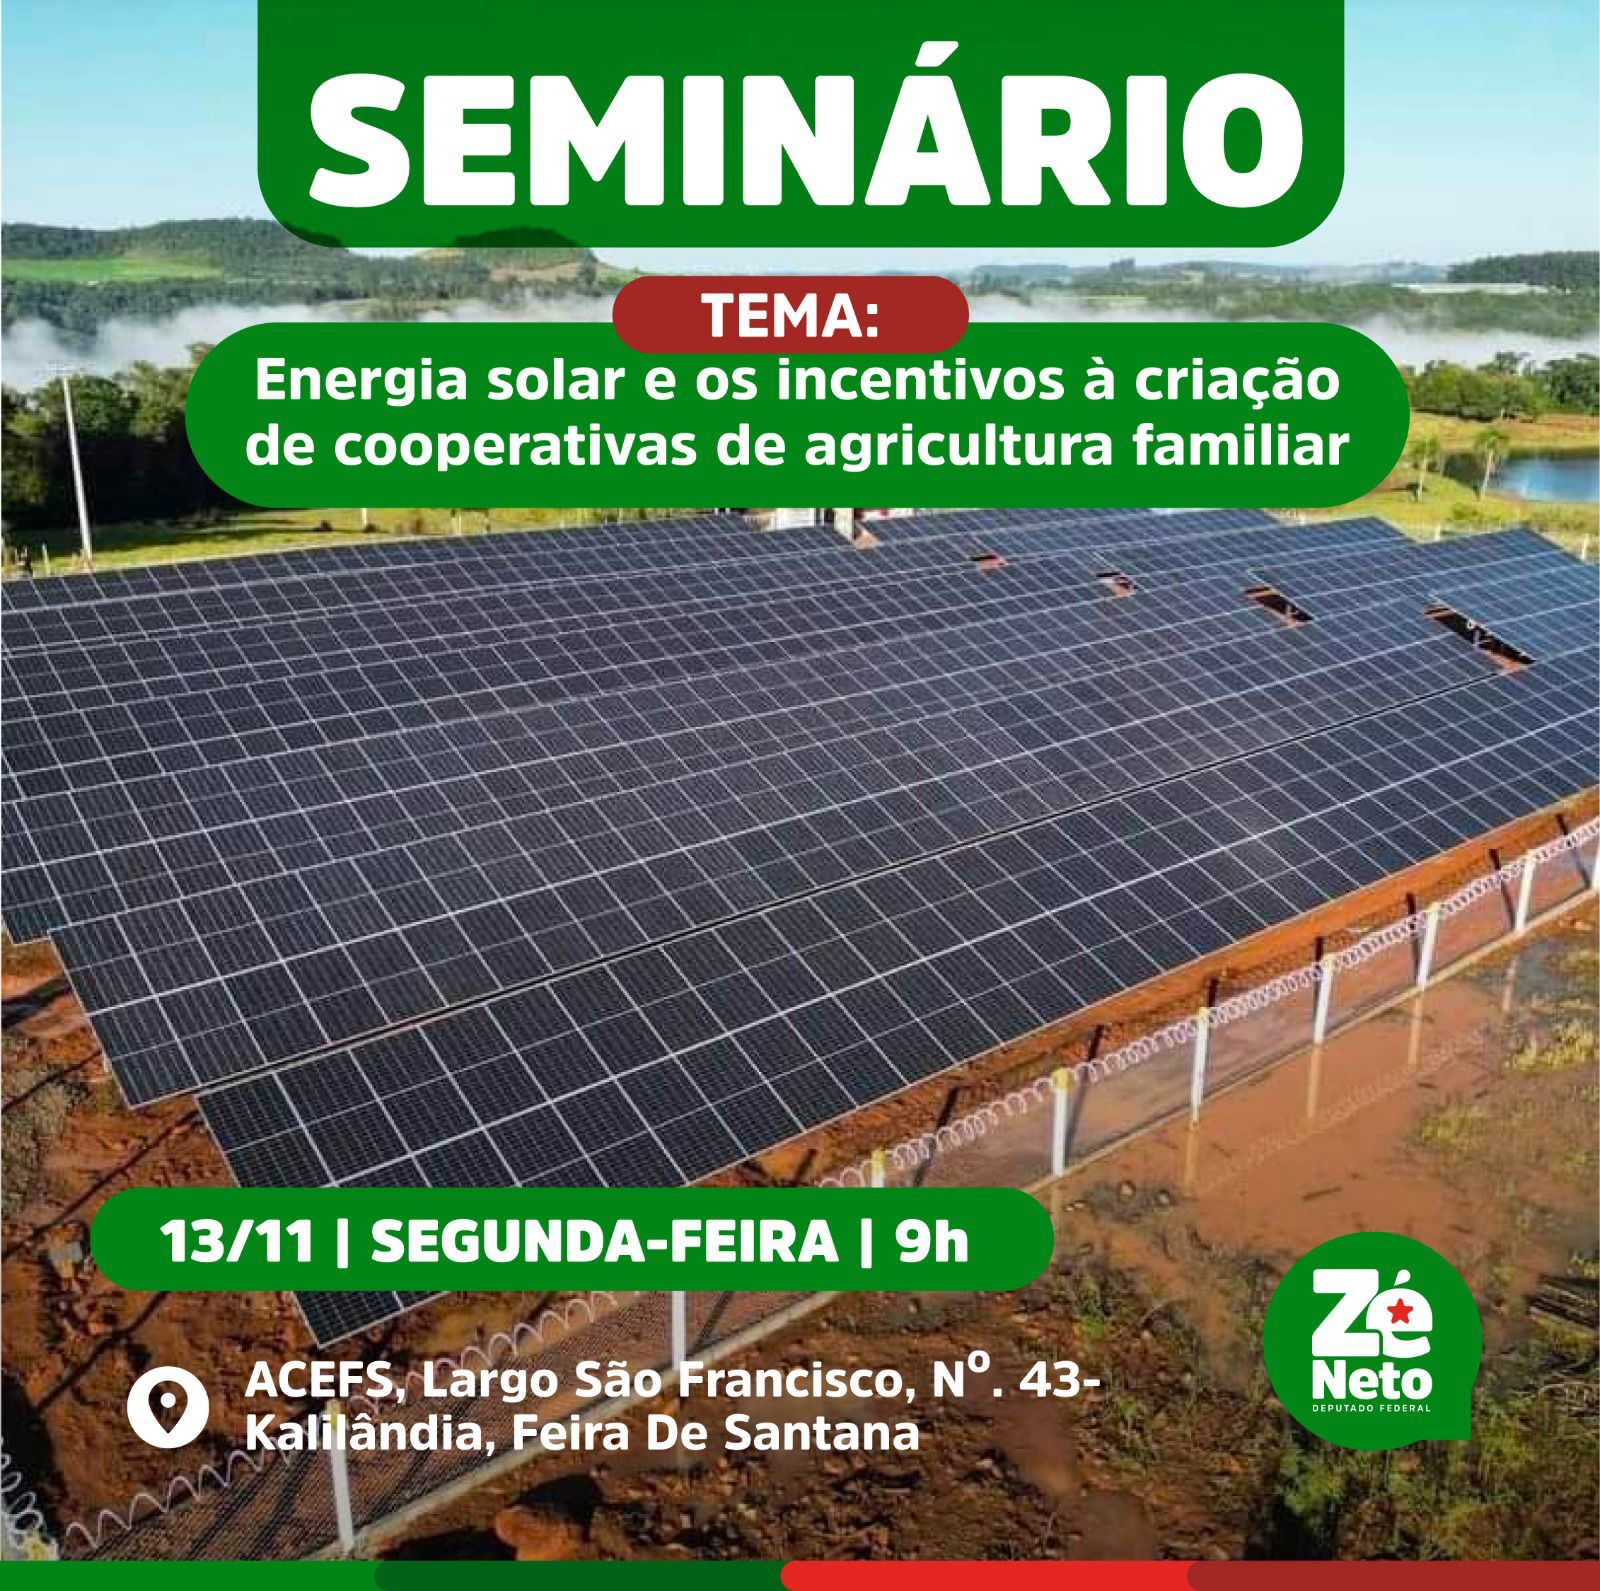 Seminário promovido por Zé Neto vai debater Energia Solar e incentivos à criação de Cooperativas da Agricultura Familiar nesta segunda-feira (13)